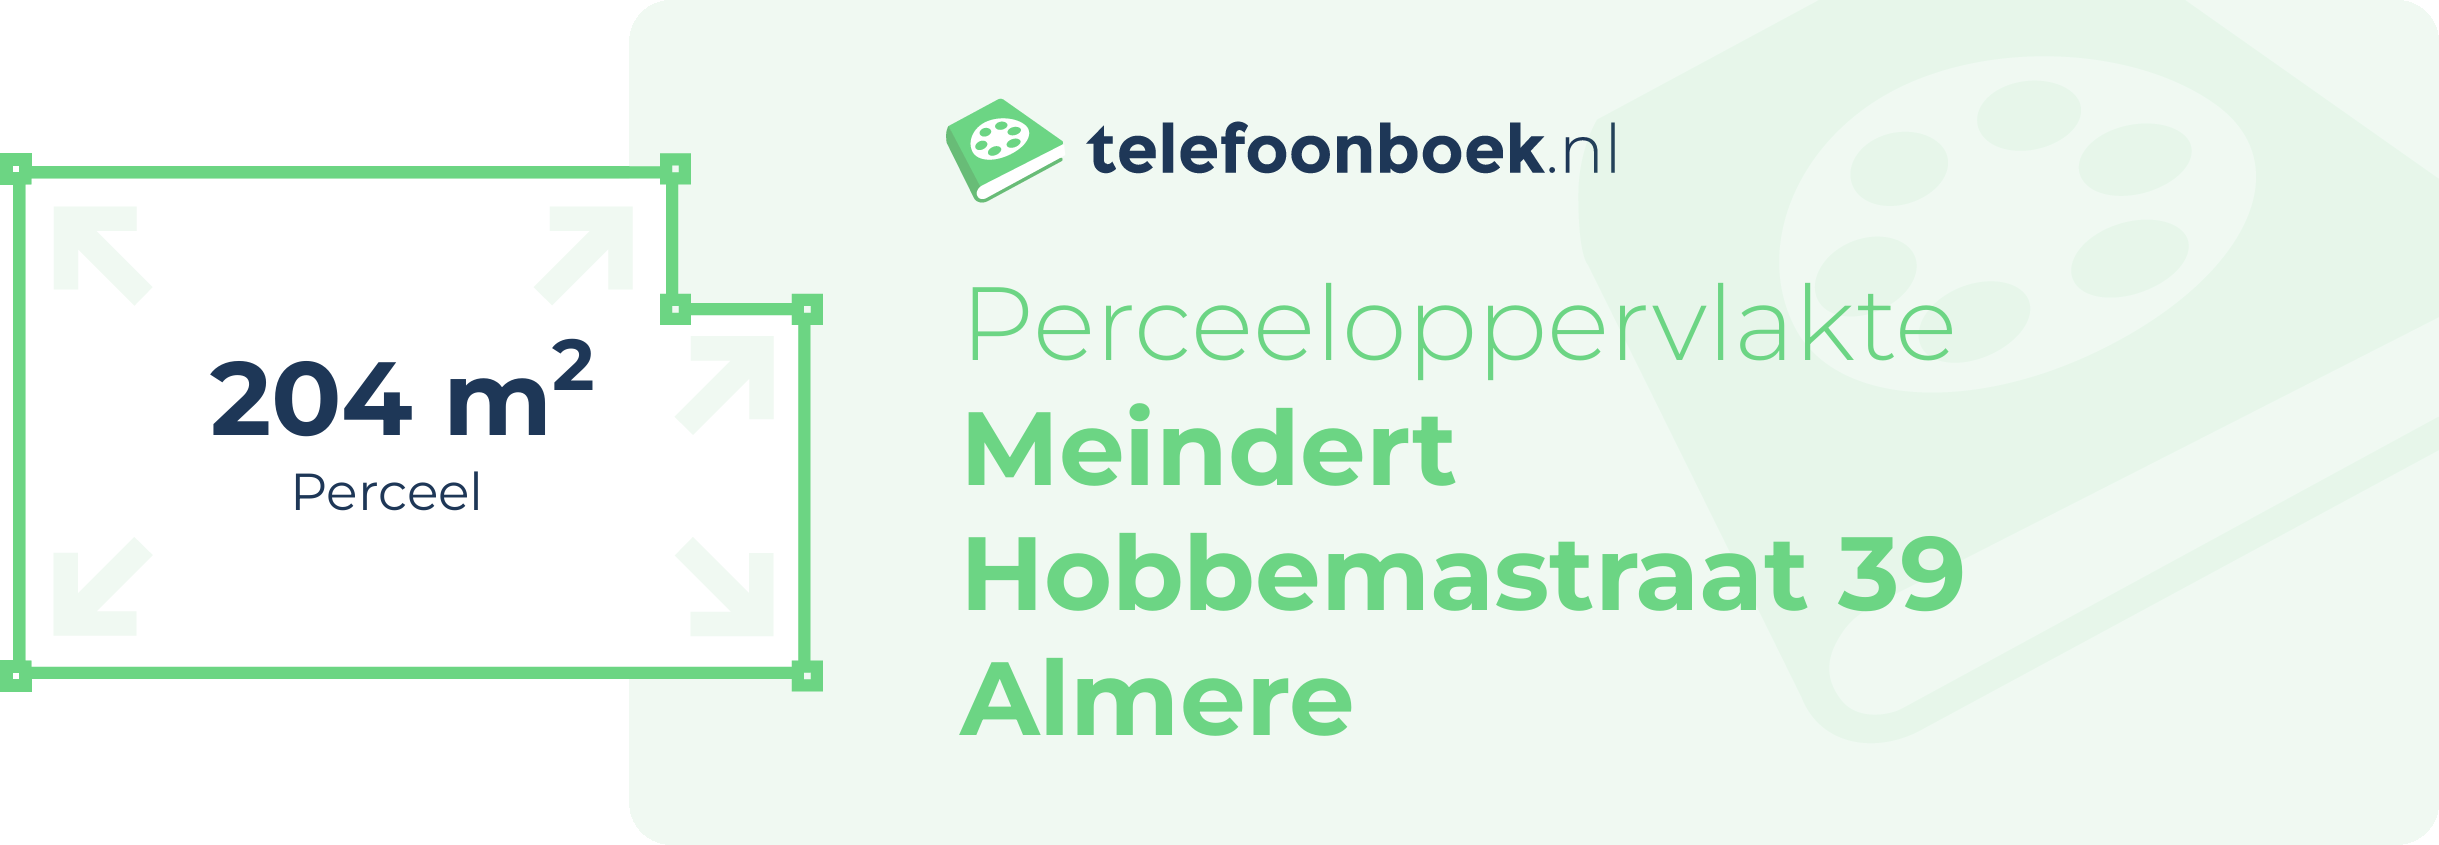 Perceeloppervlakte Meindert Hobbemastraat 39 Almere